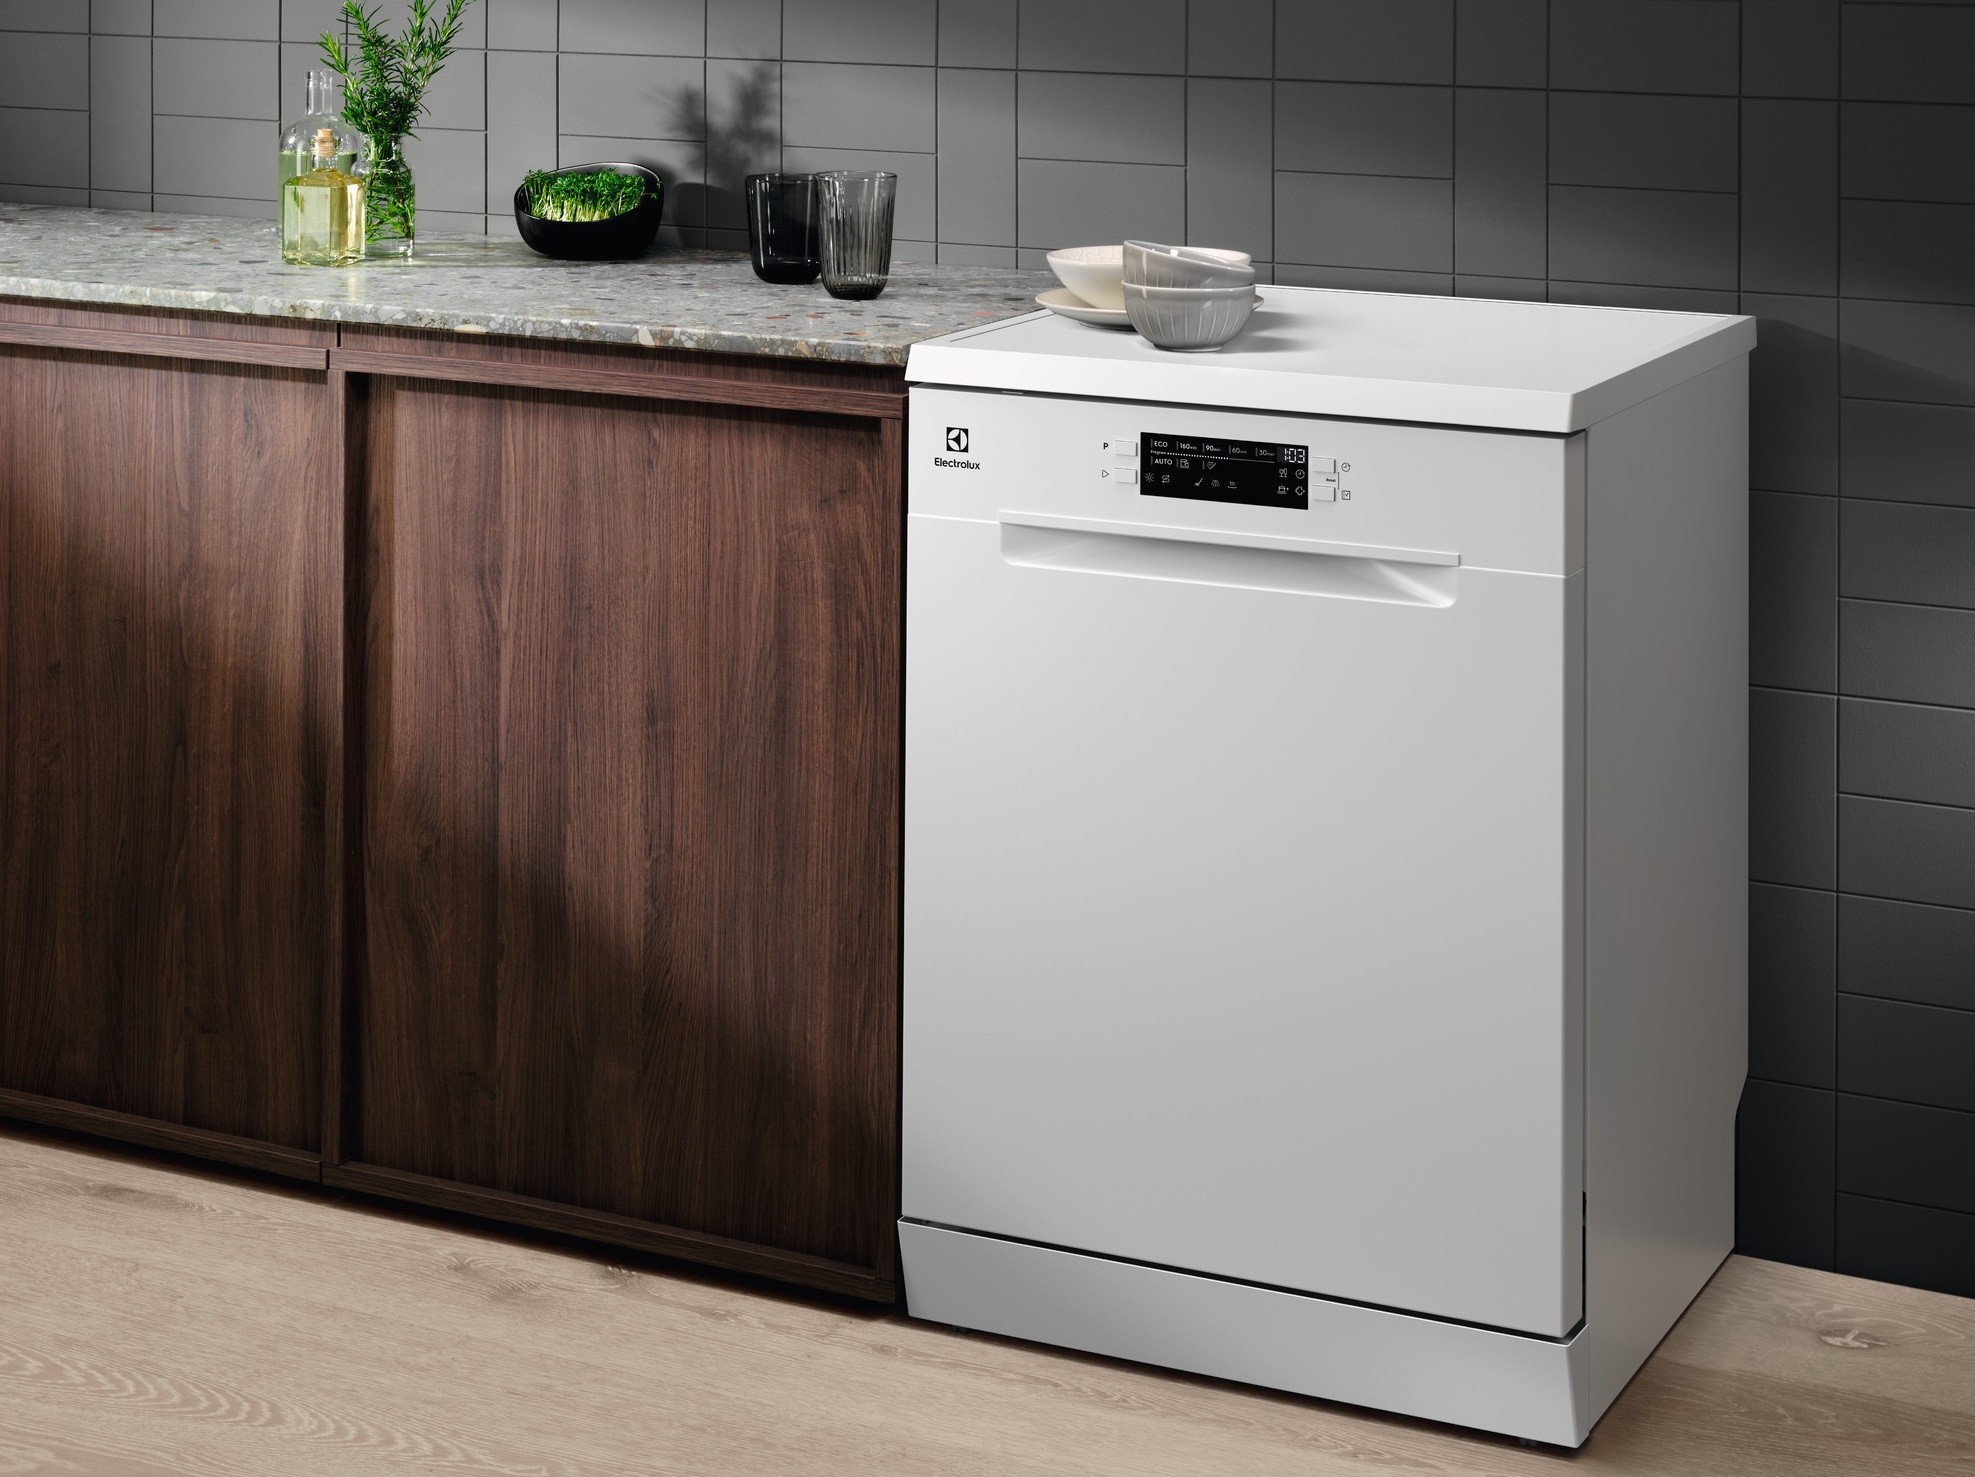 Посудомоечная машина Electrolux SEM94830SW цена 21999 грн - фотография 2